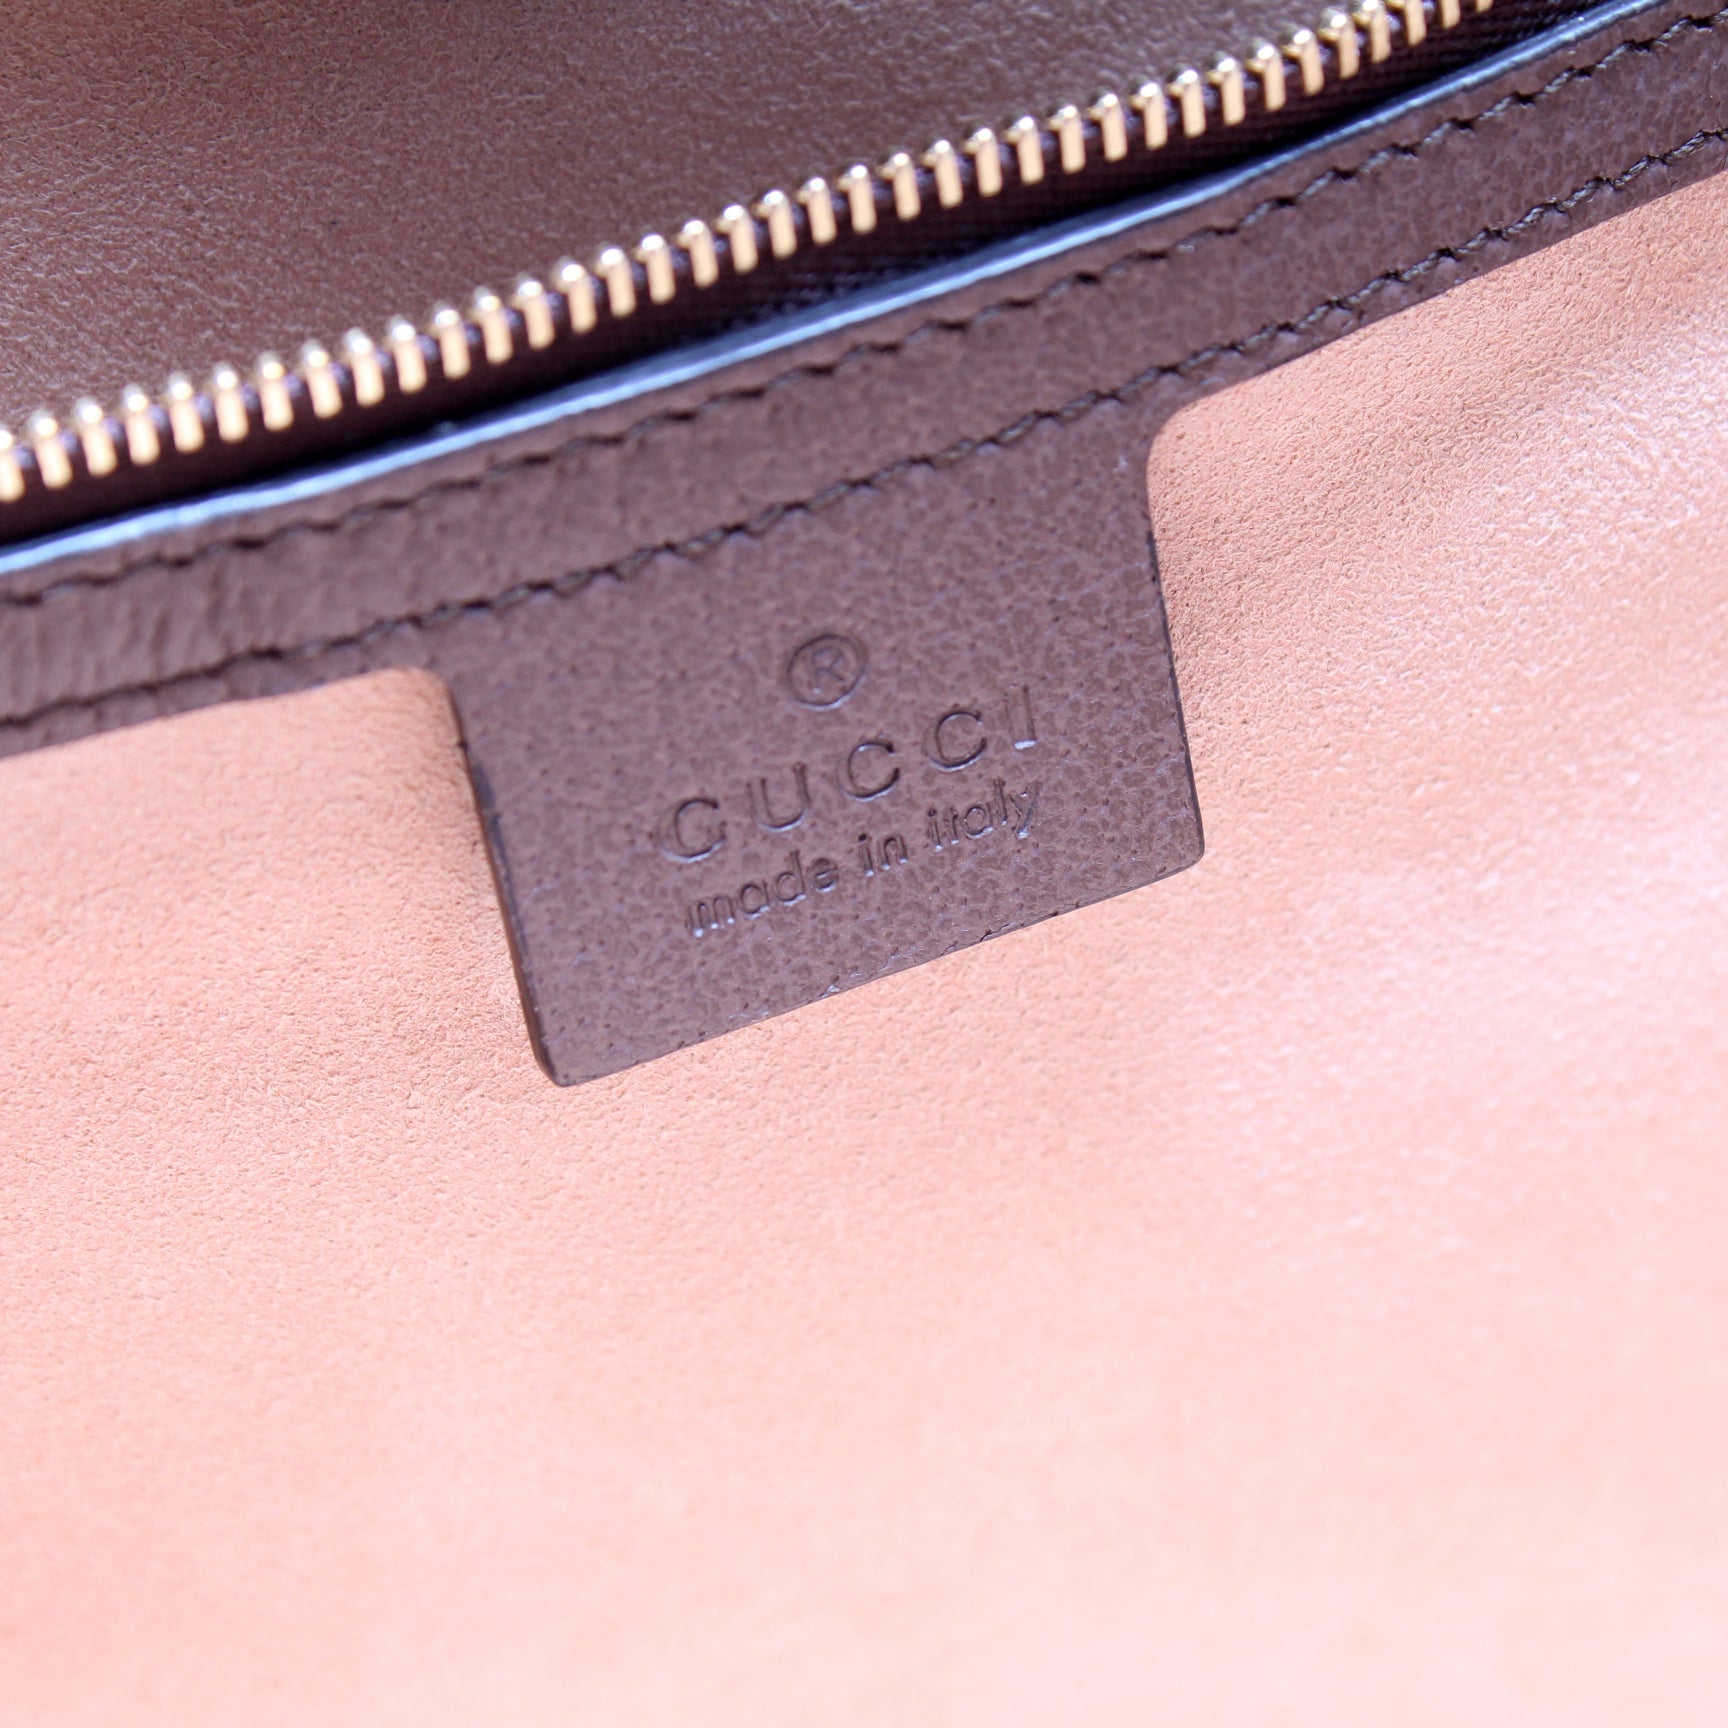 631685 Ophidia Tote – Keeks Designer Handbags